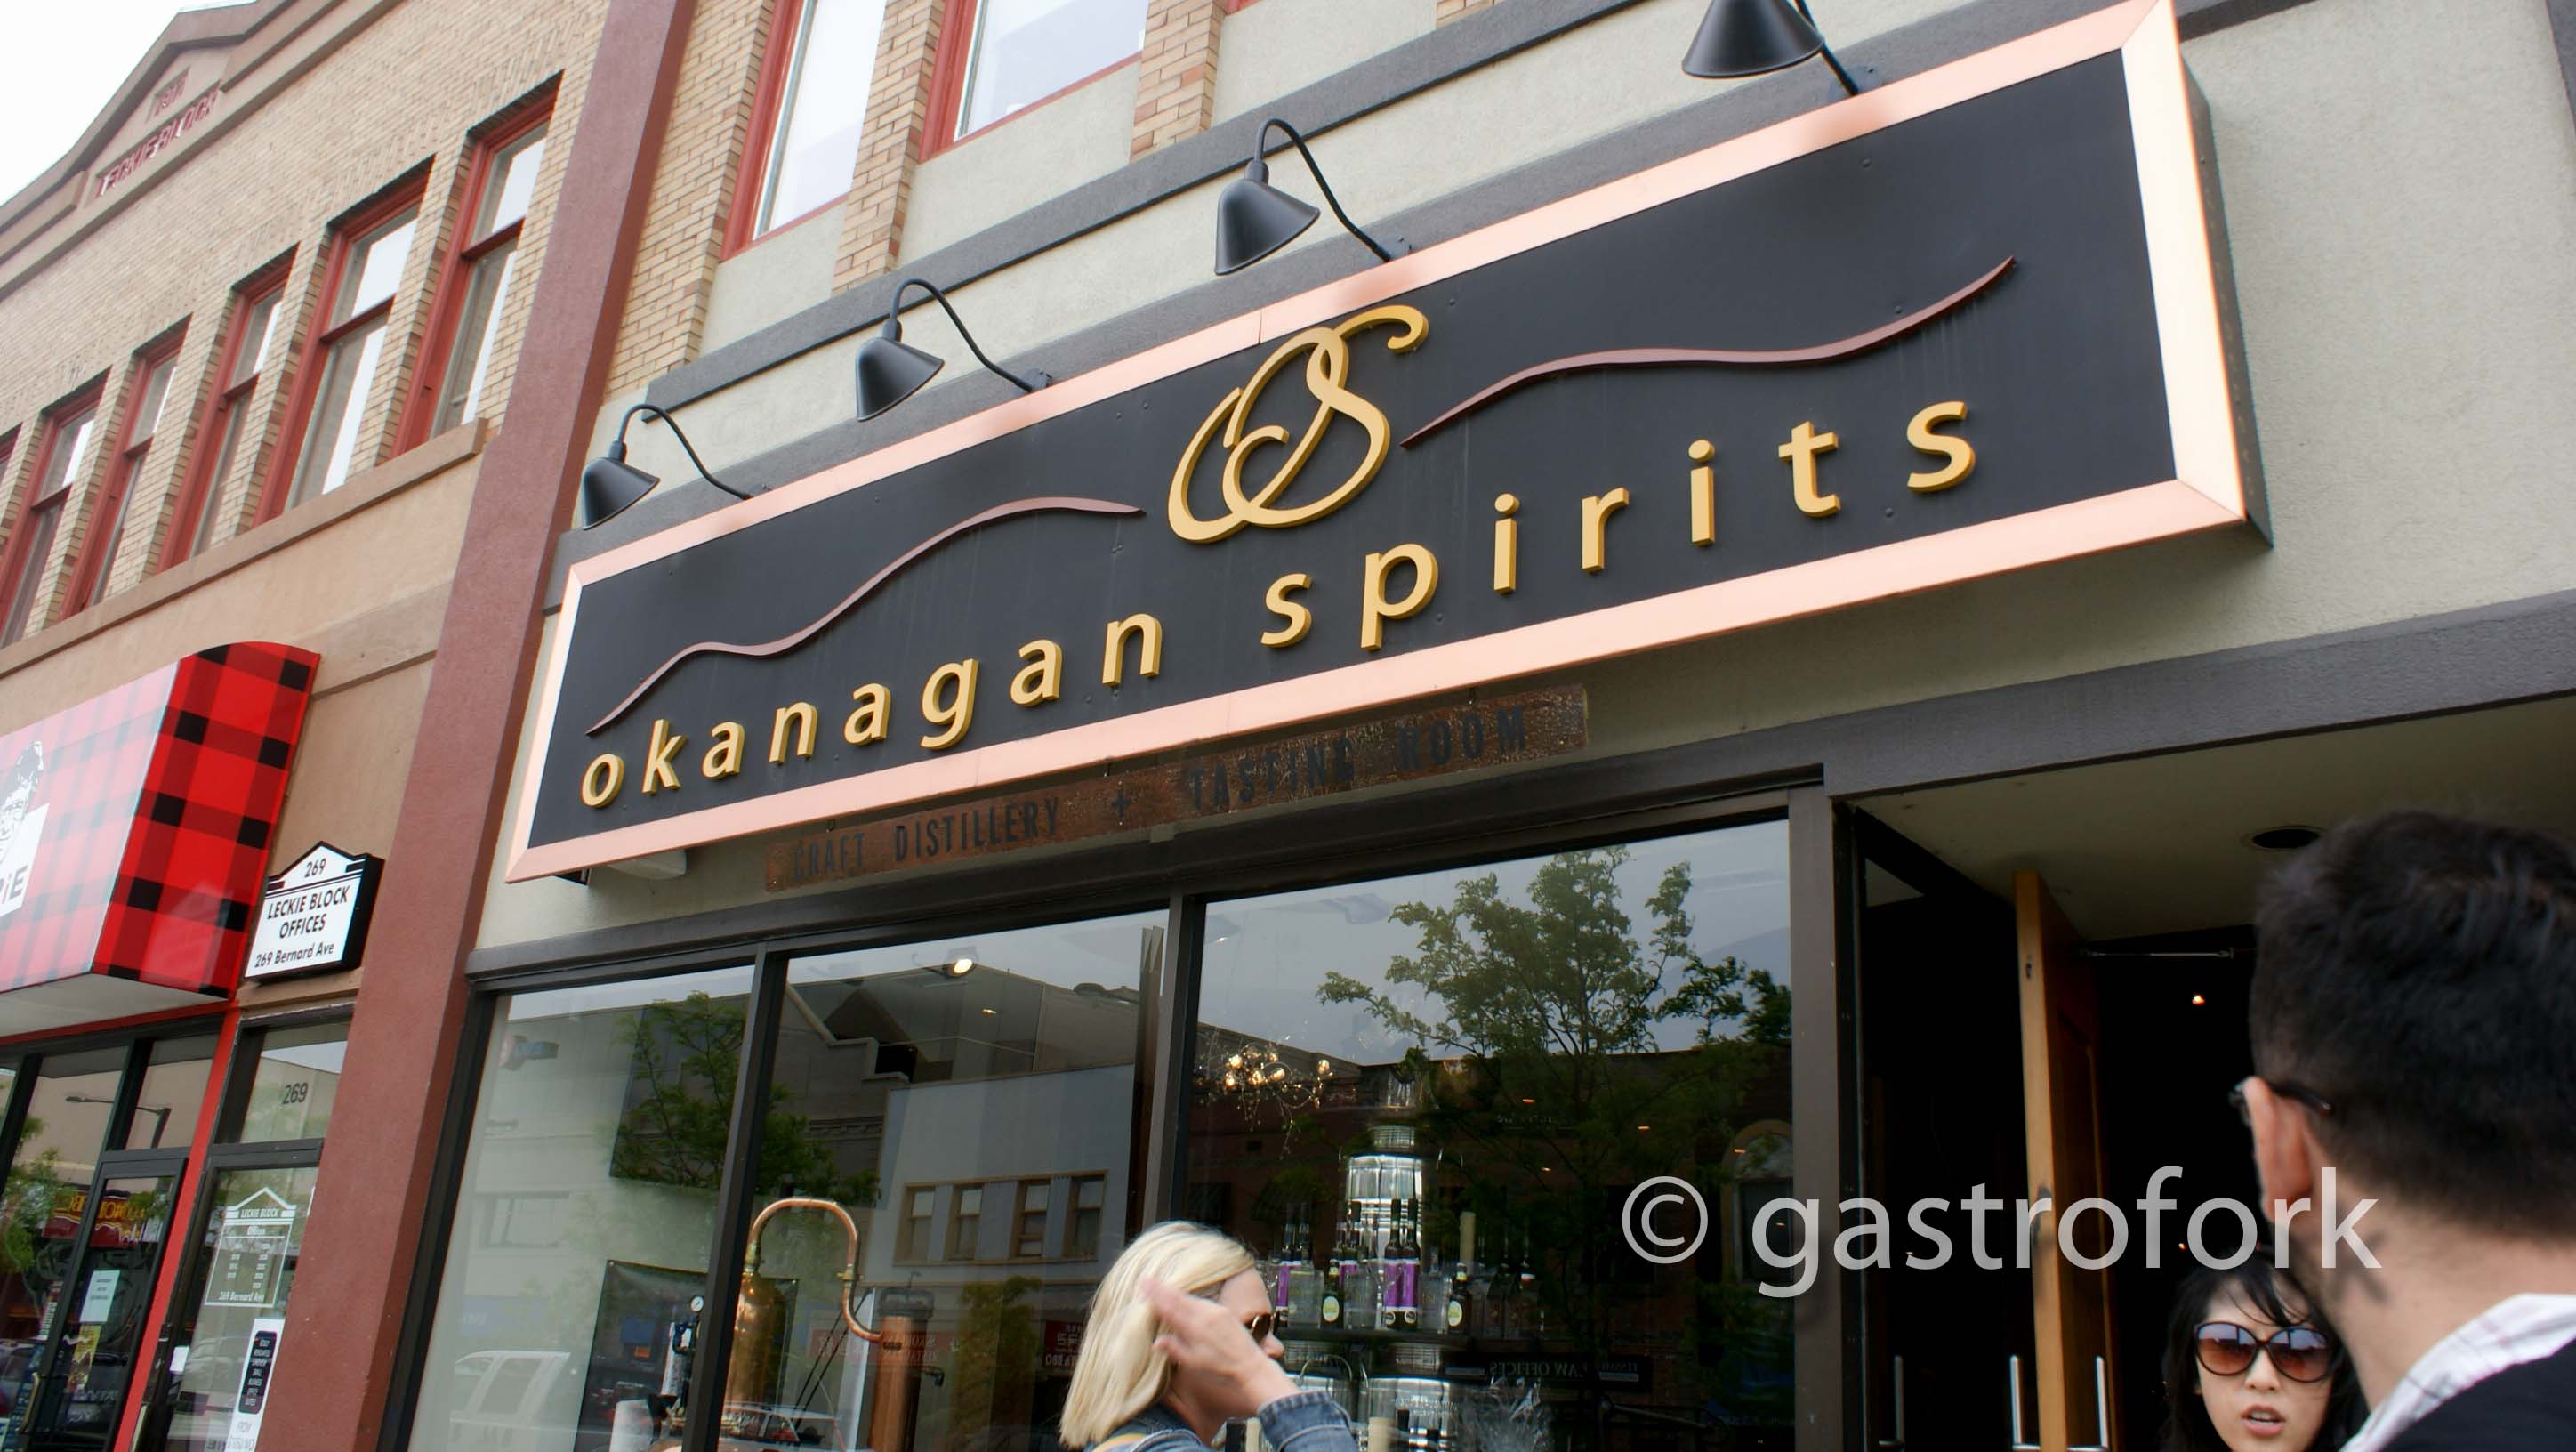 okanagan spirits 